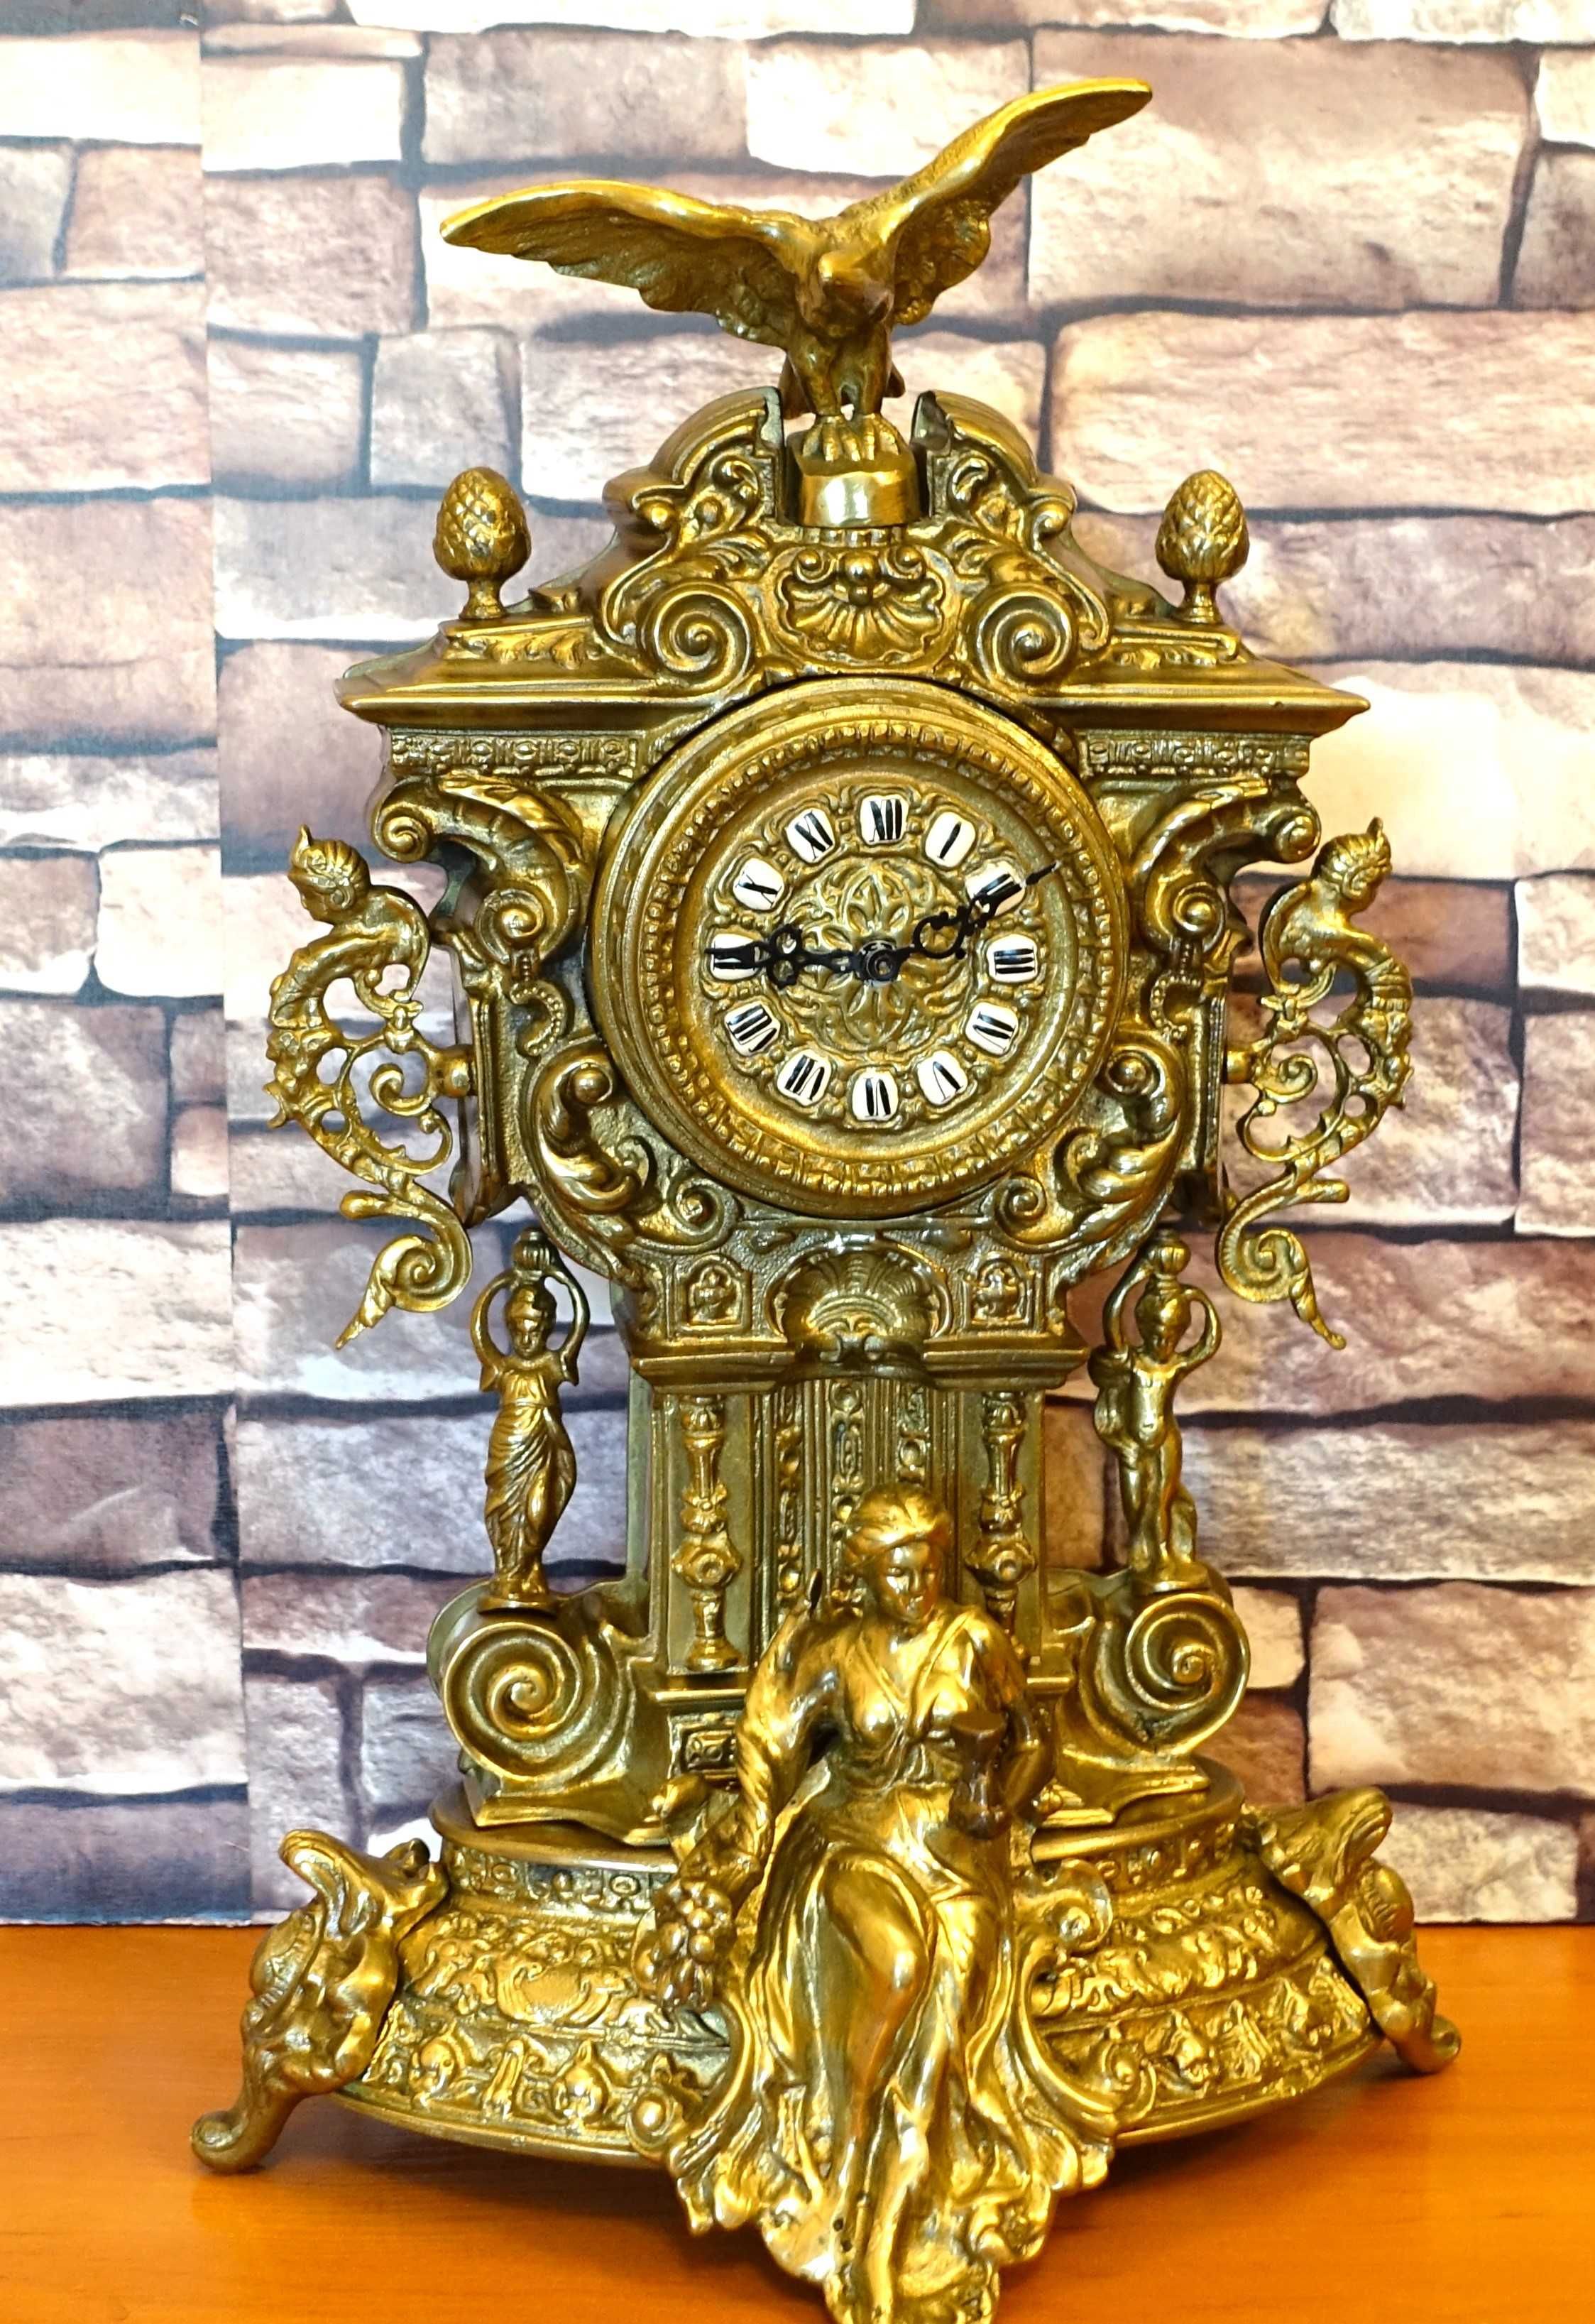 Ładny, duży zegar kominkowy wykonany z mosiądzu 11kg